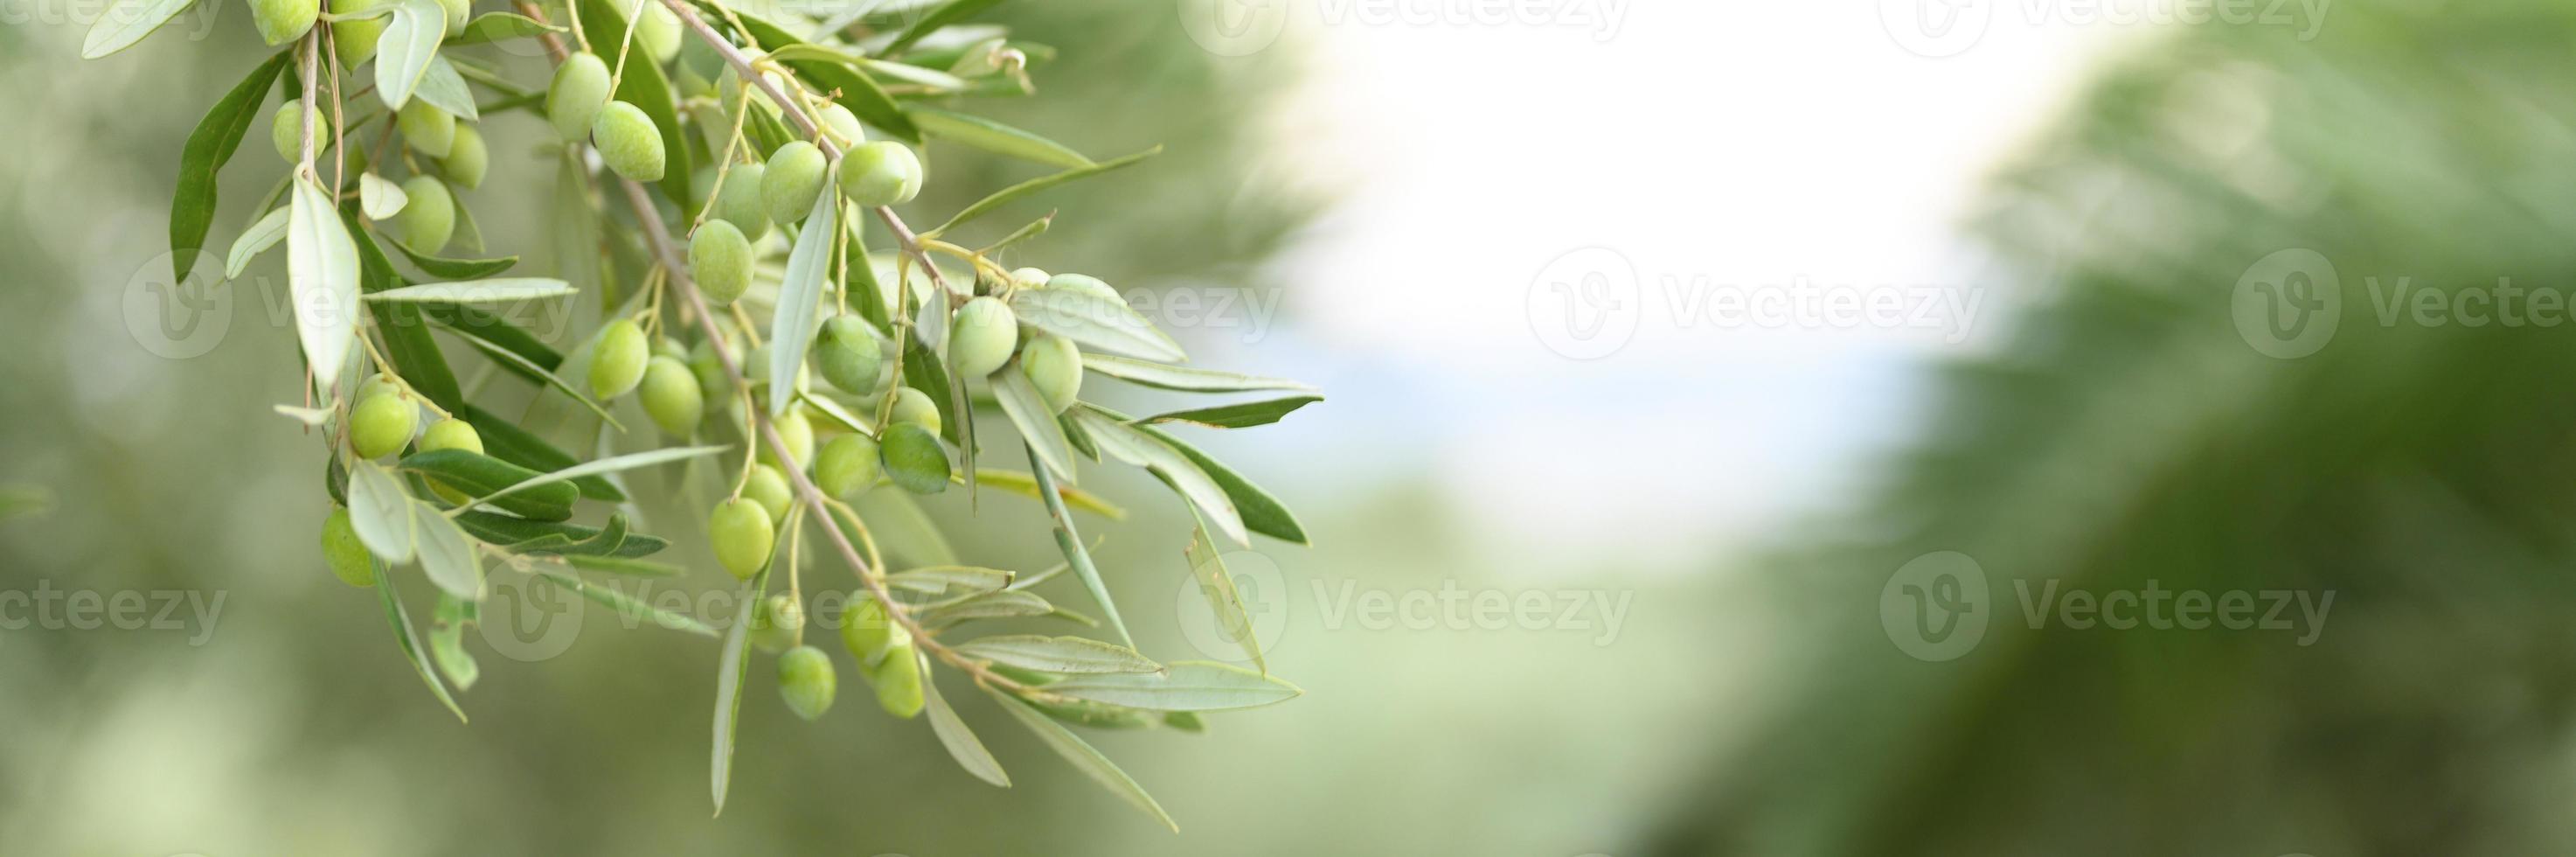 Olives vertes poussant sur une branche d'olivier dans le jardin photo